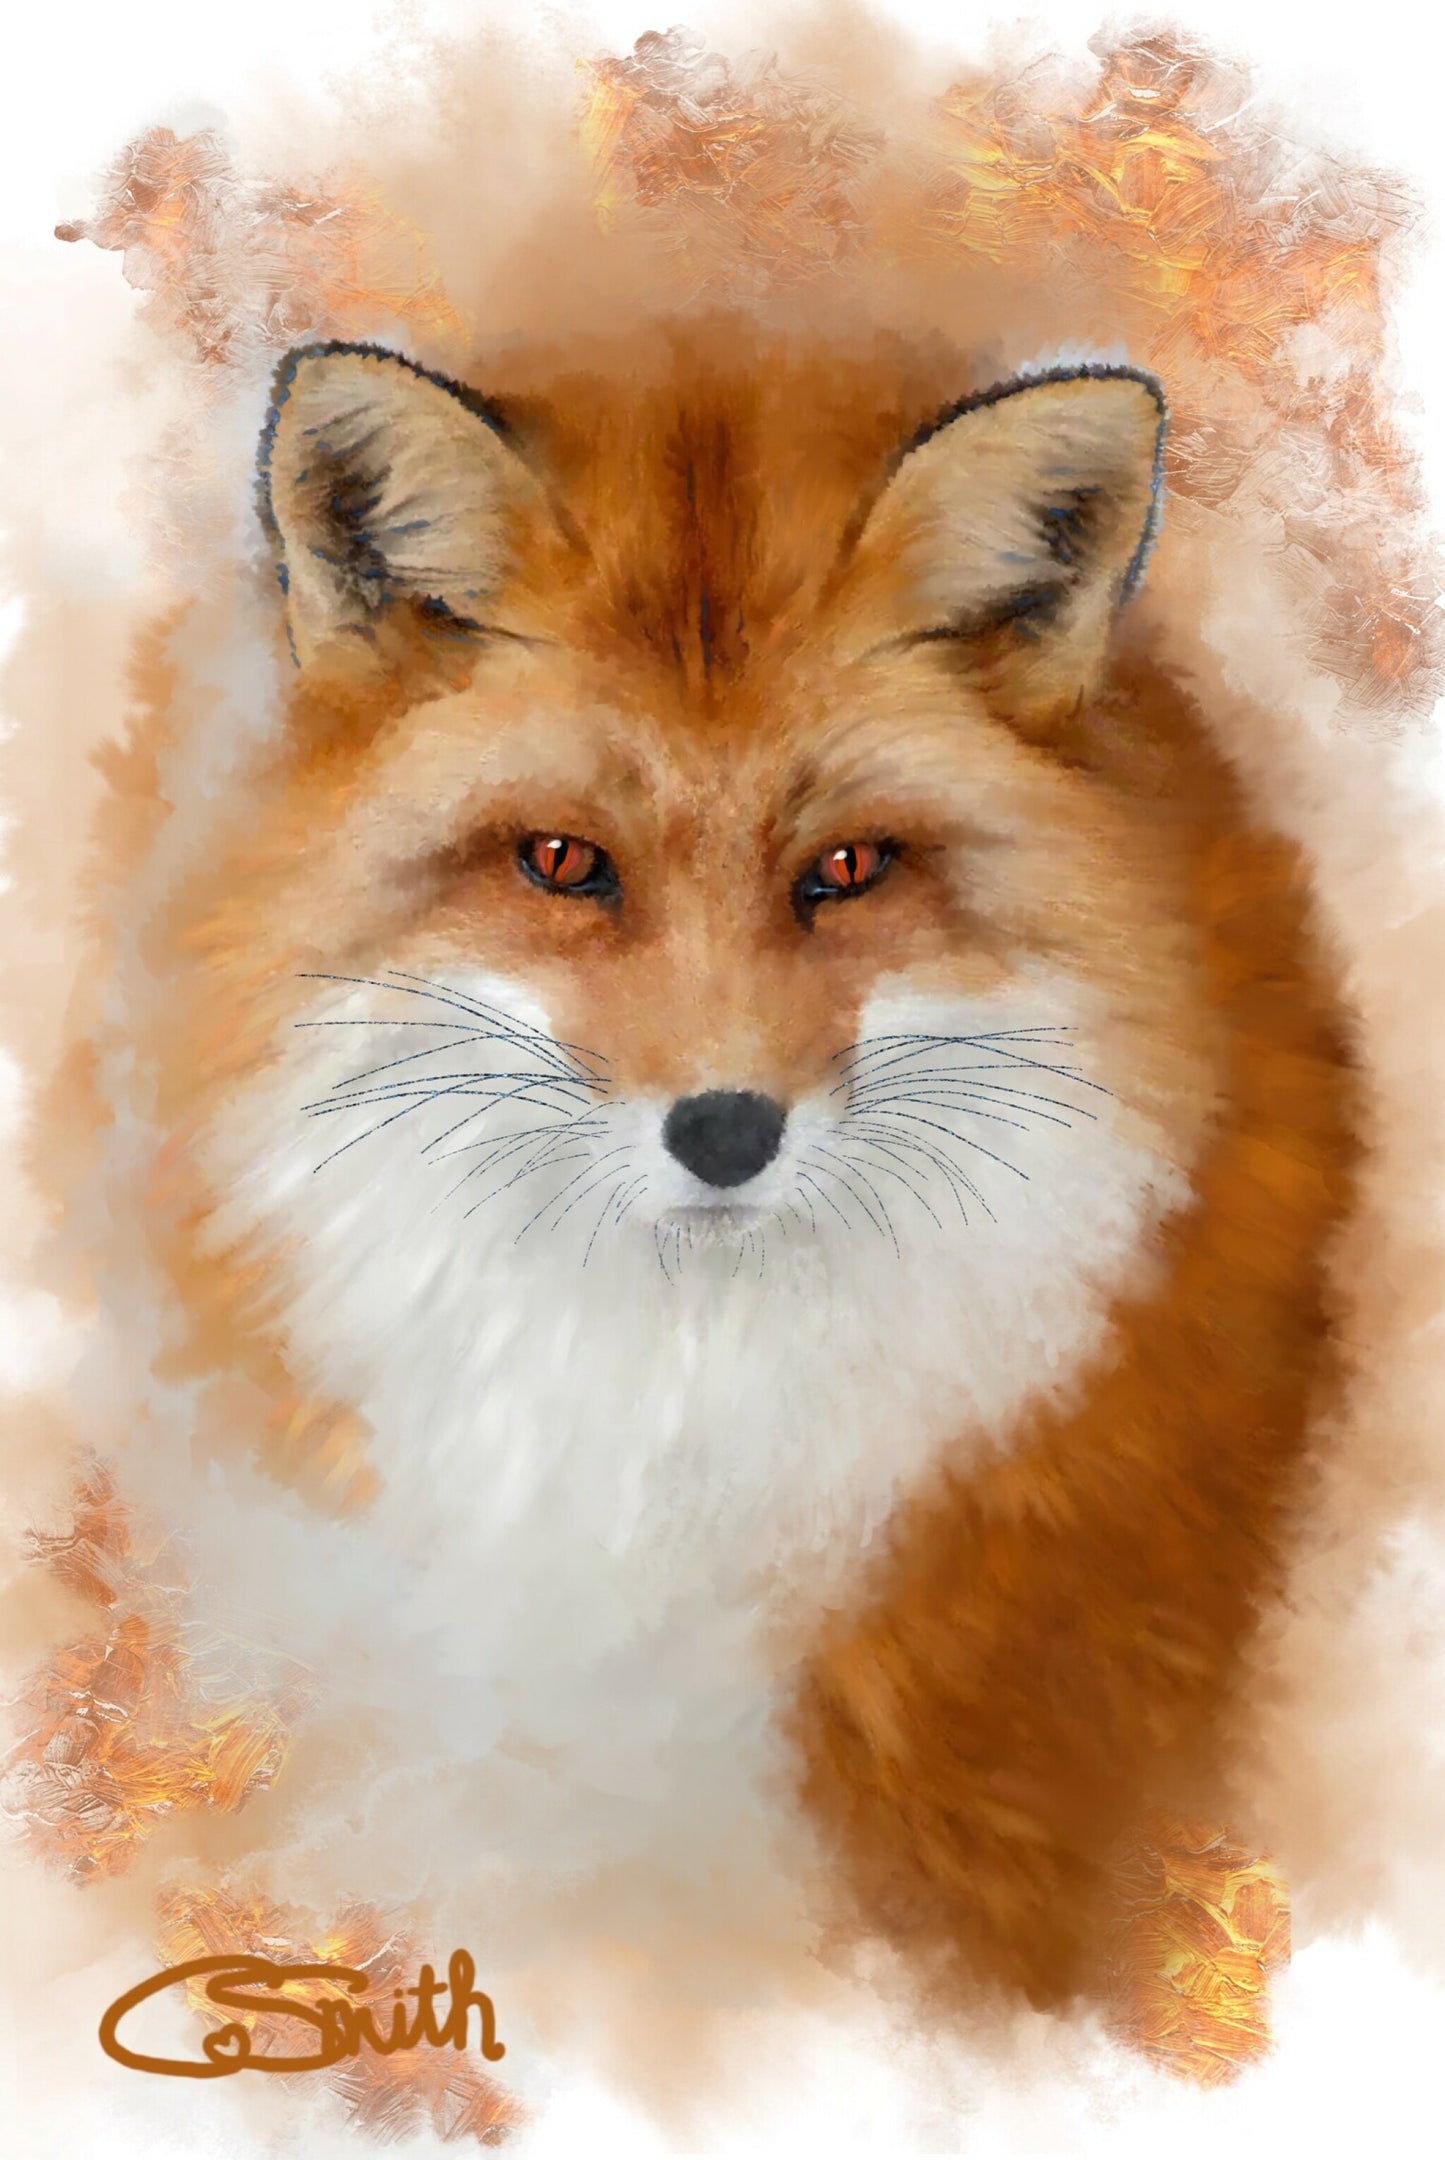 British Wildlife Art Fox Framed Print Gift Idea 14" x 11" (Matte Black or White Frame)